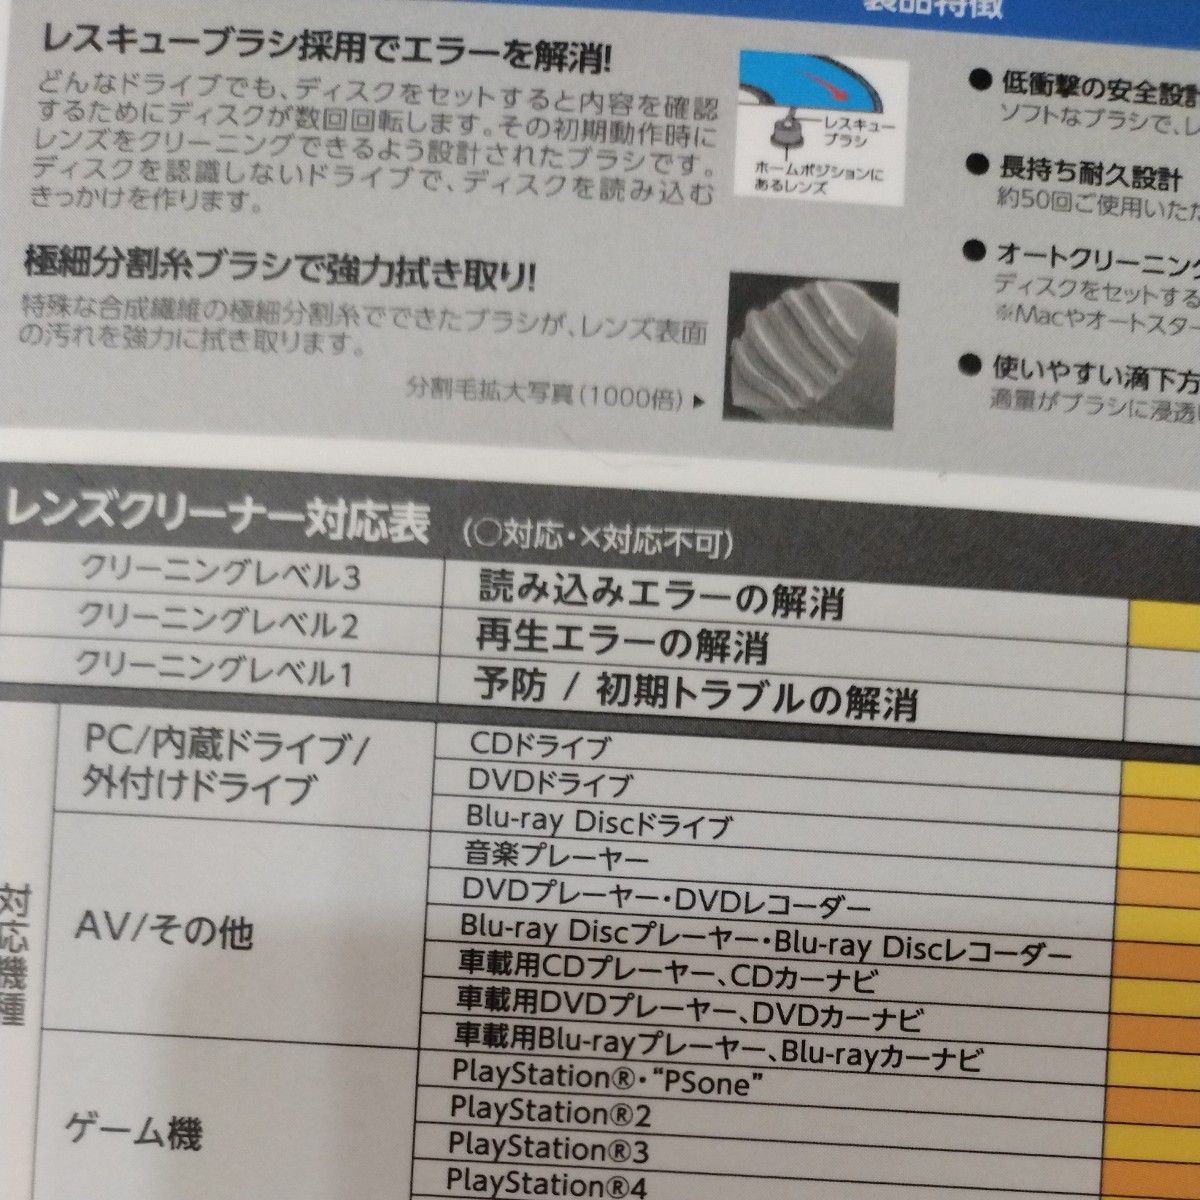 エレコム レンズクリーナー CD/DVD用 読み込みエラー解消に 湿式 対応 日本製 CK-CDDVD3